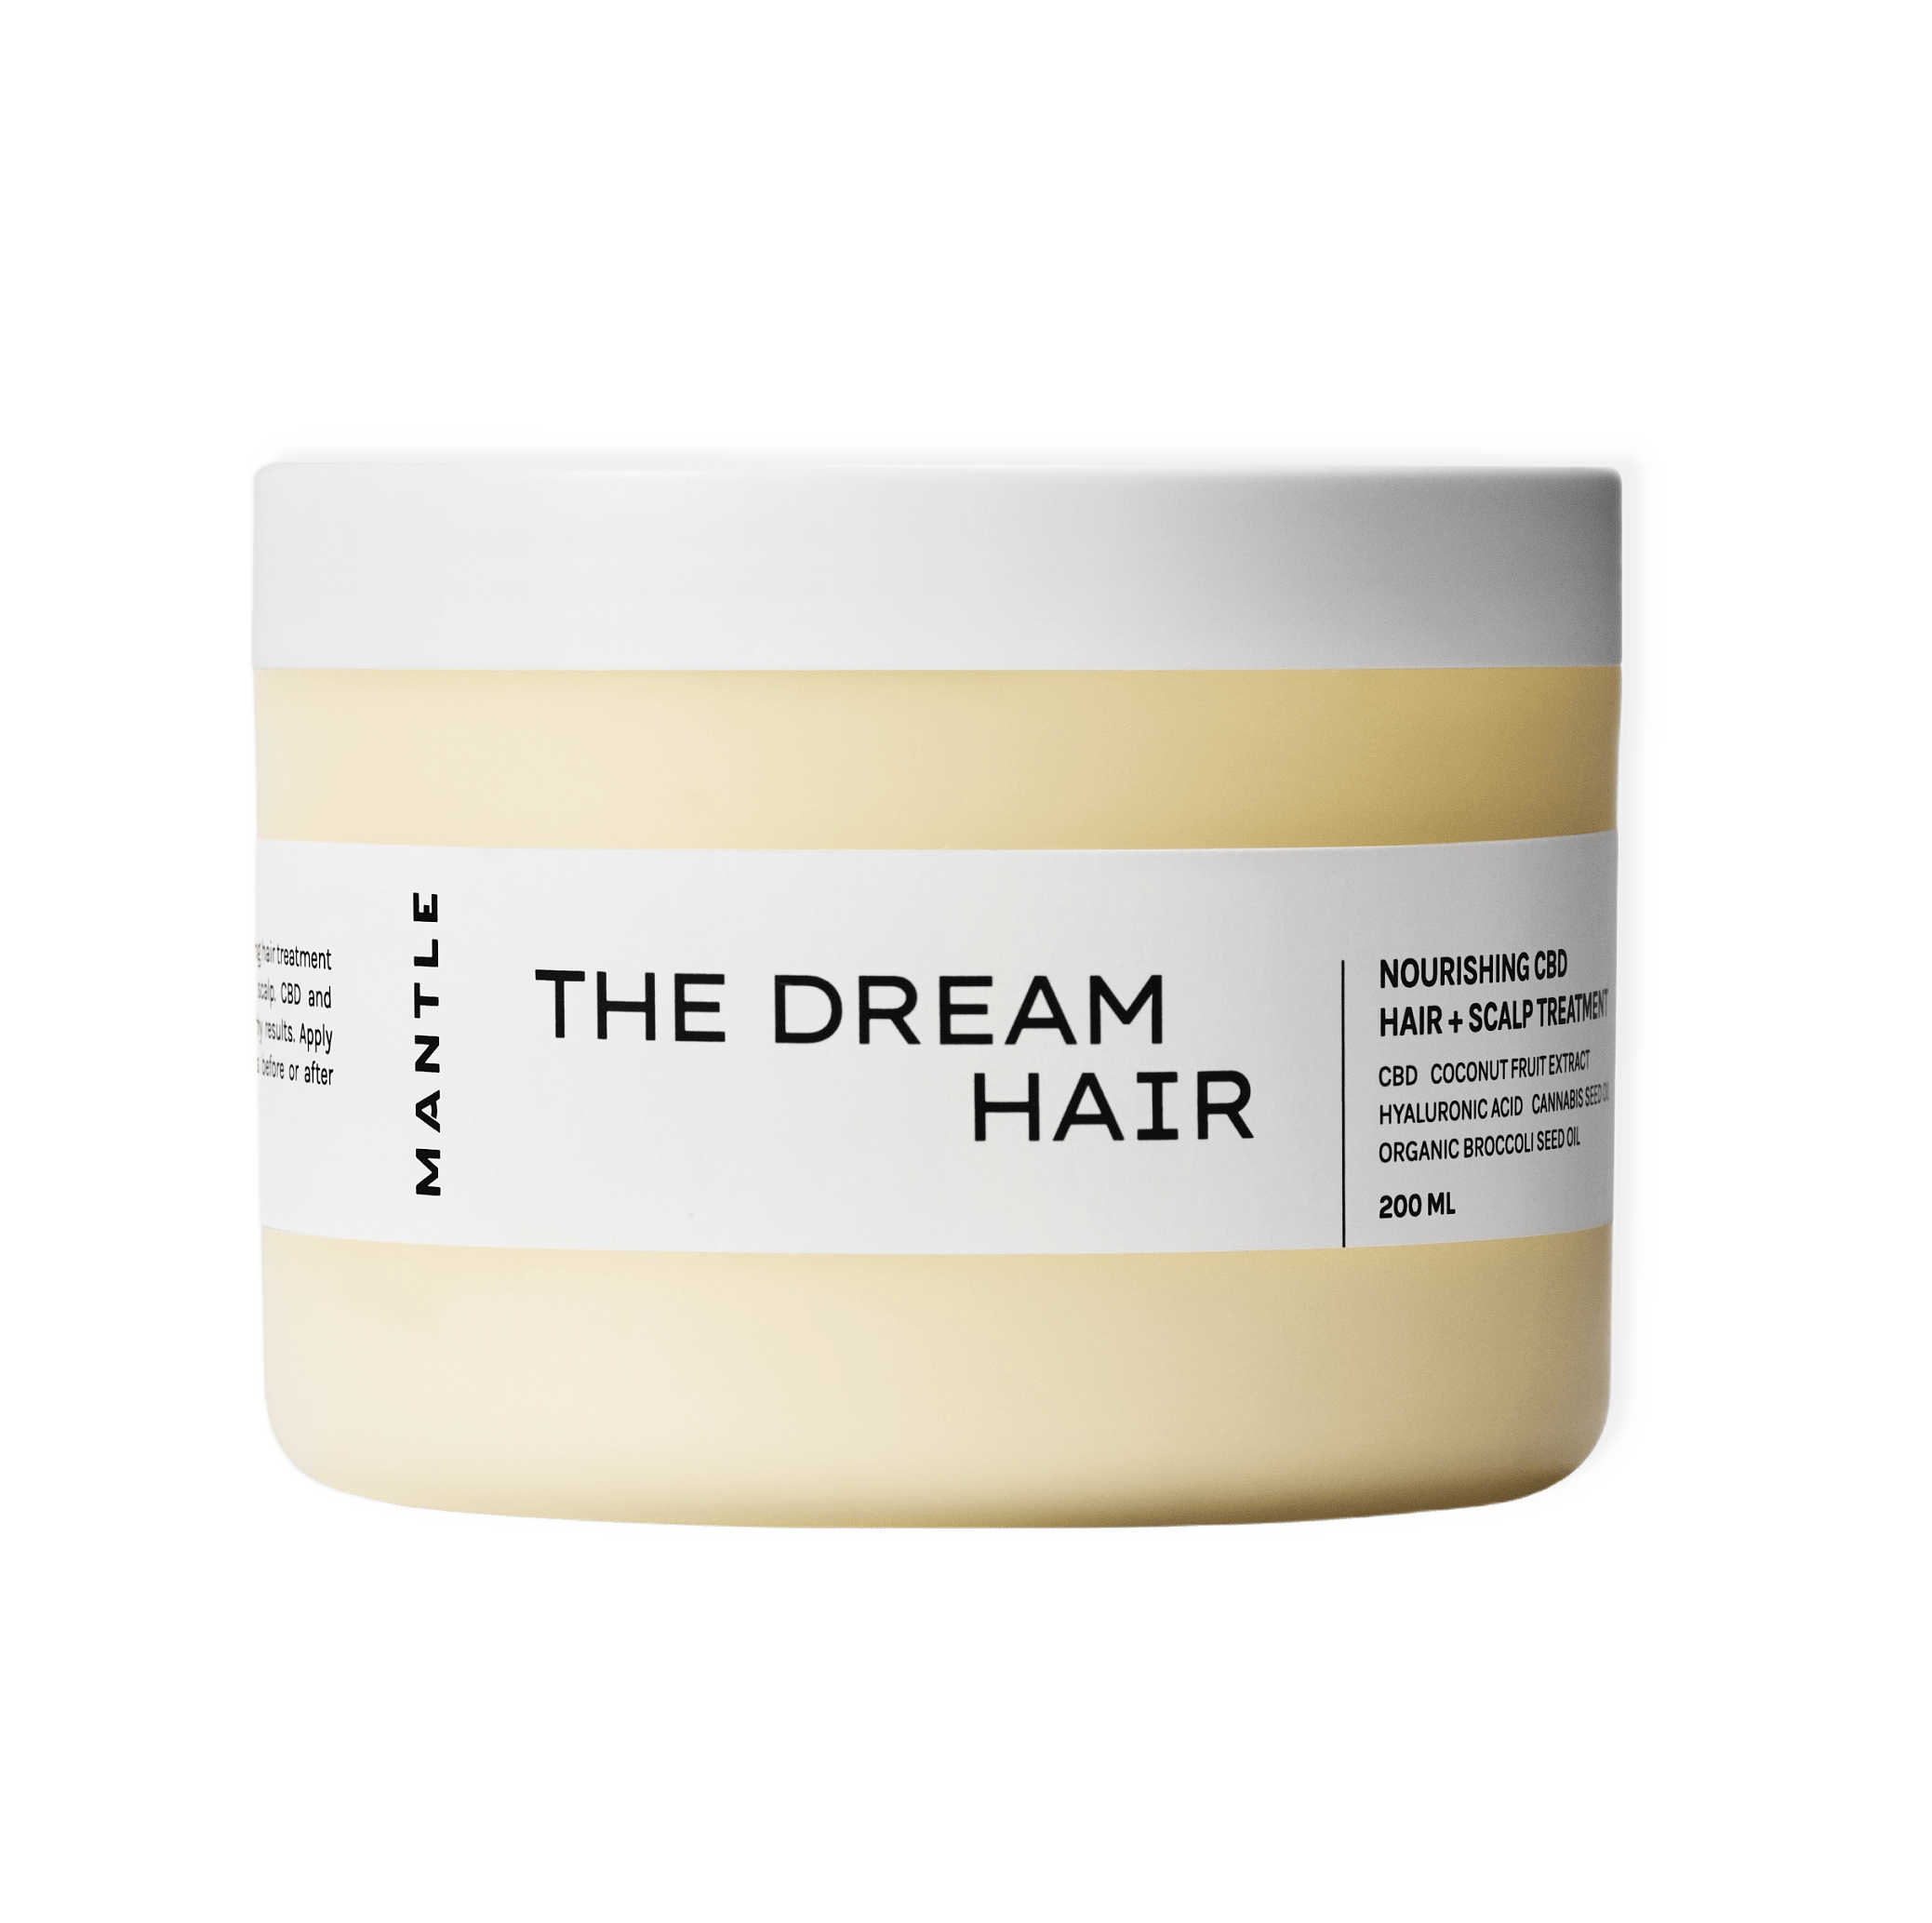 The Dream Hair – Nourishing CBD hair + scalp treatment från Mantle